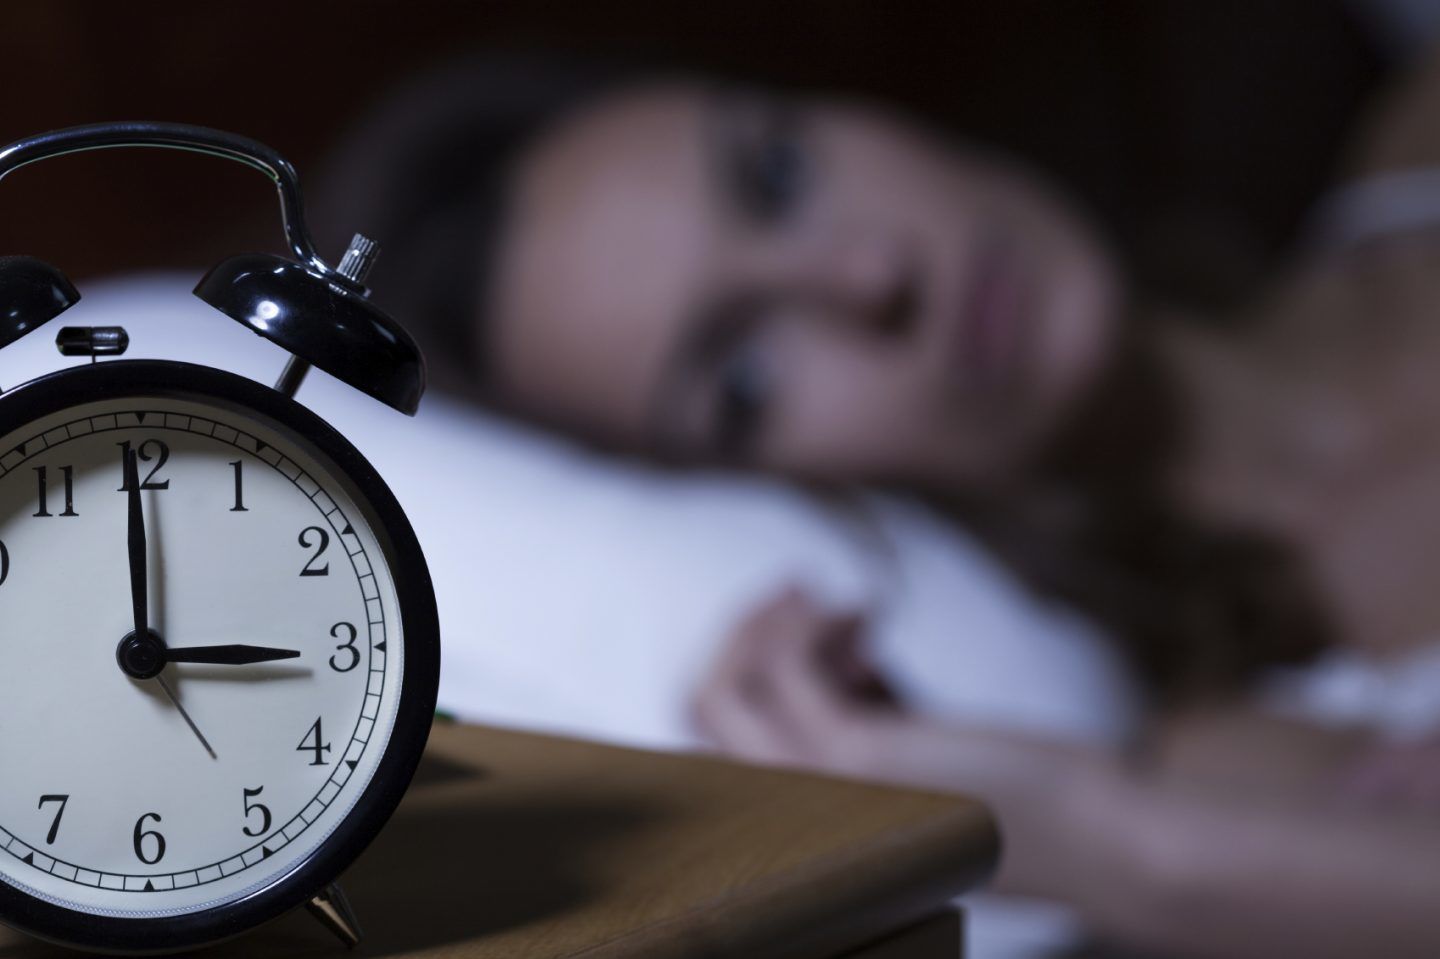 تسع مشاكل شائعة للنوم، كيف تتخلص منها مع العلم؟